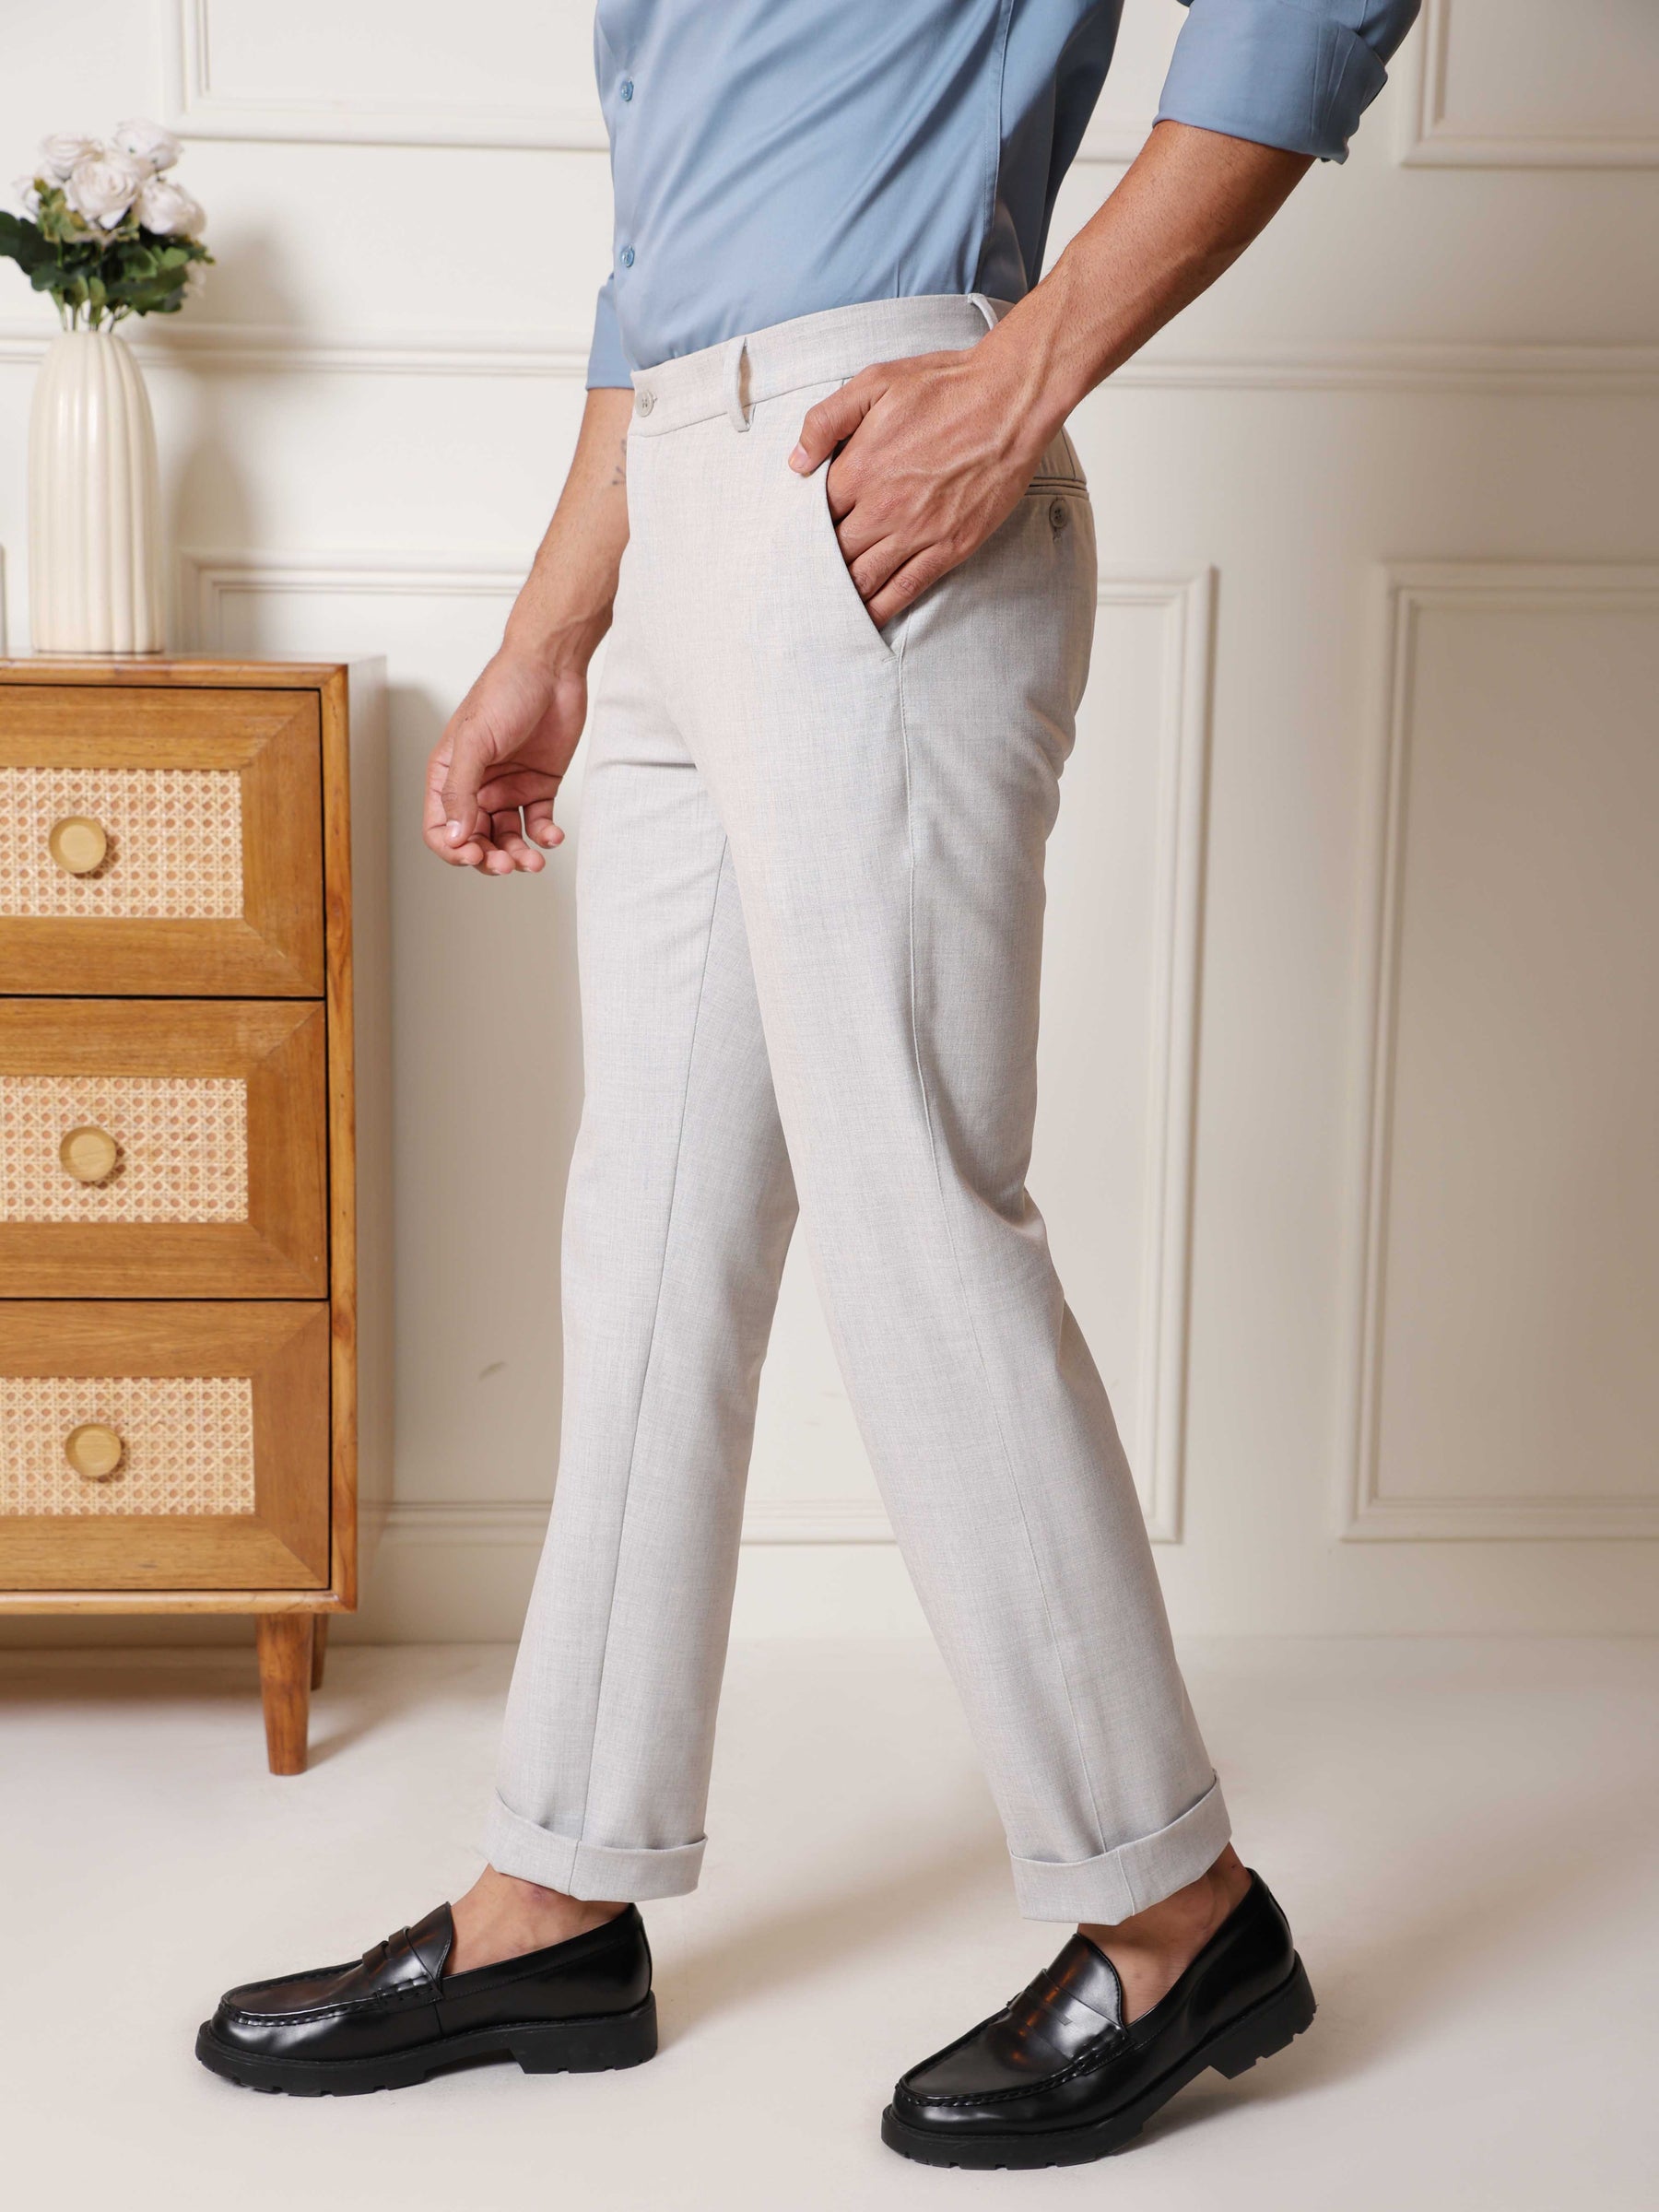 Flex Waist 4-Way Stretch Formal Trousers in Lunar Grey - Slim Fit